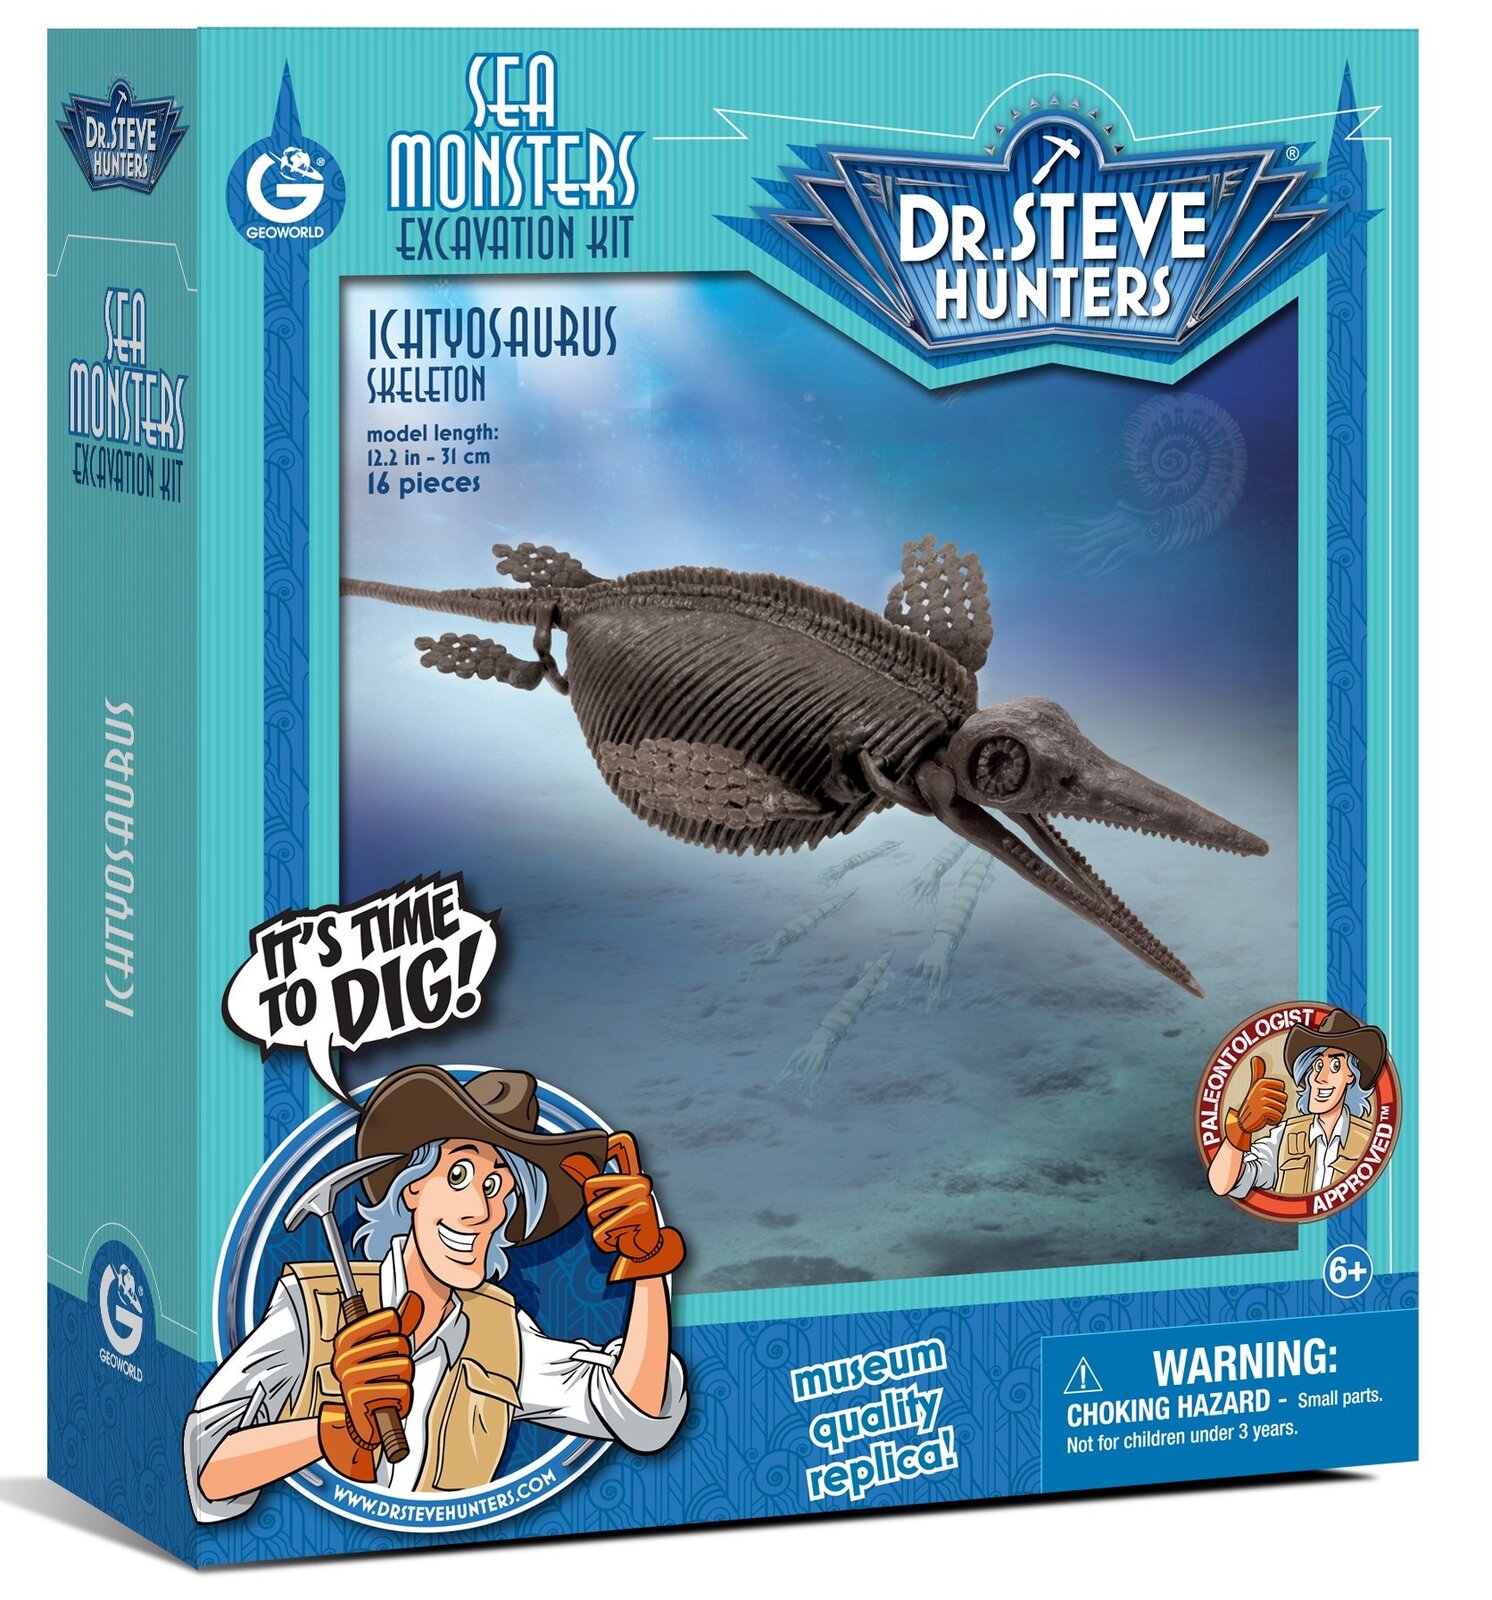 Ichthyosaurus Excavation kit image